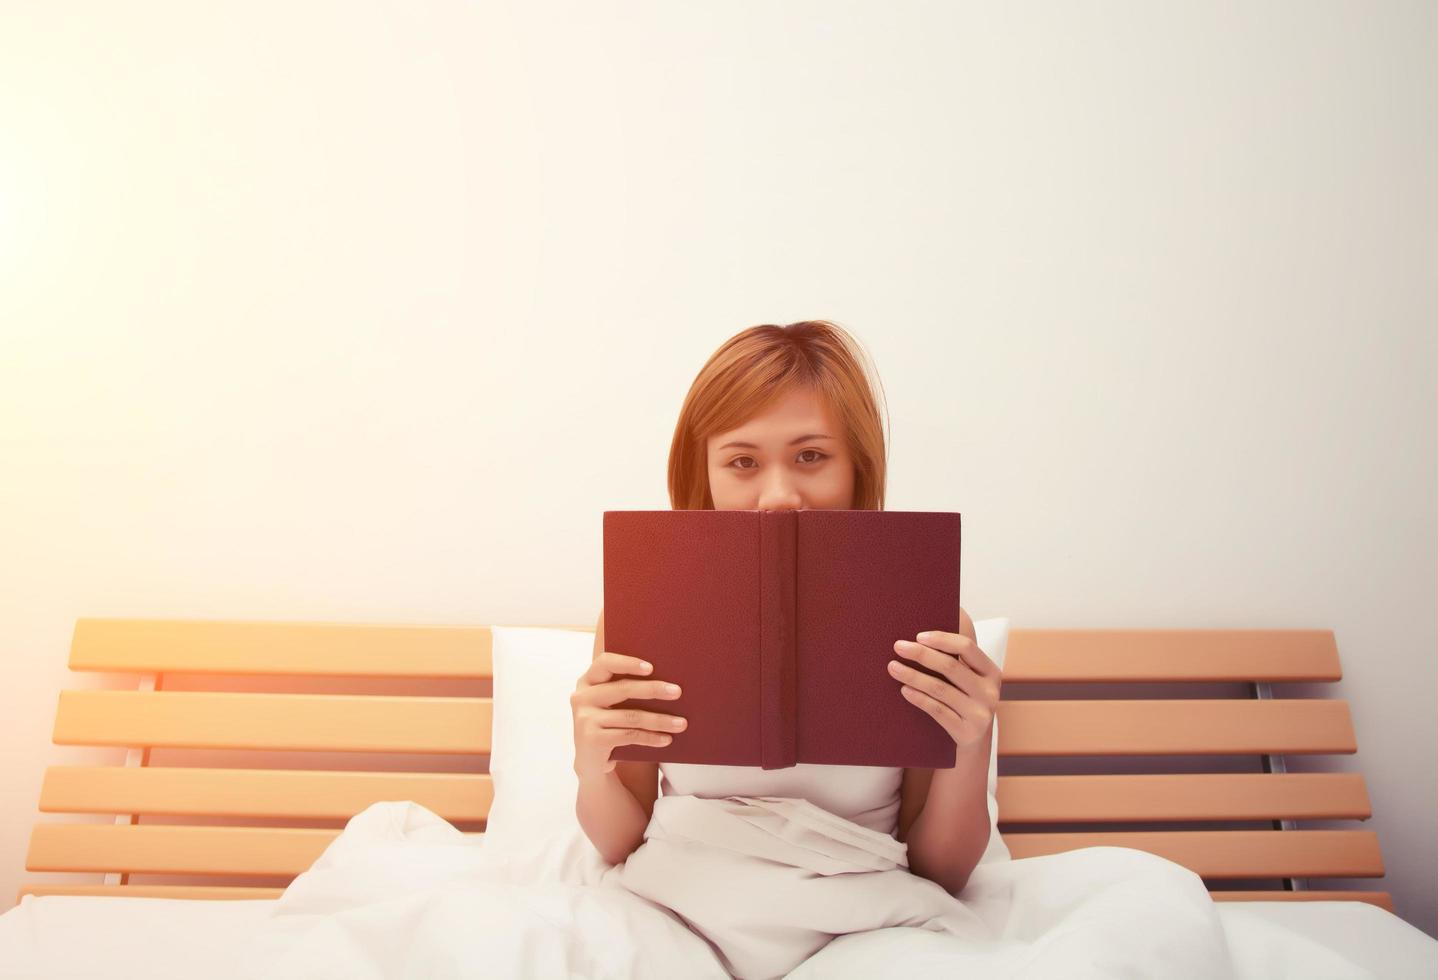 bella joven durmiendo en la cama después de leer un libro con la cara cubierta por el libro foto